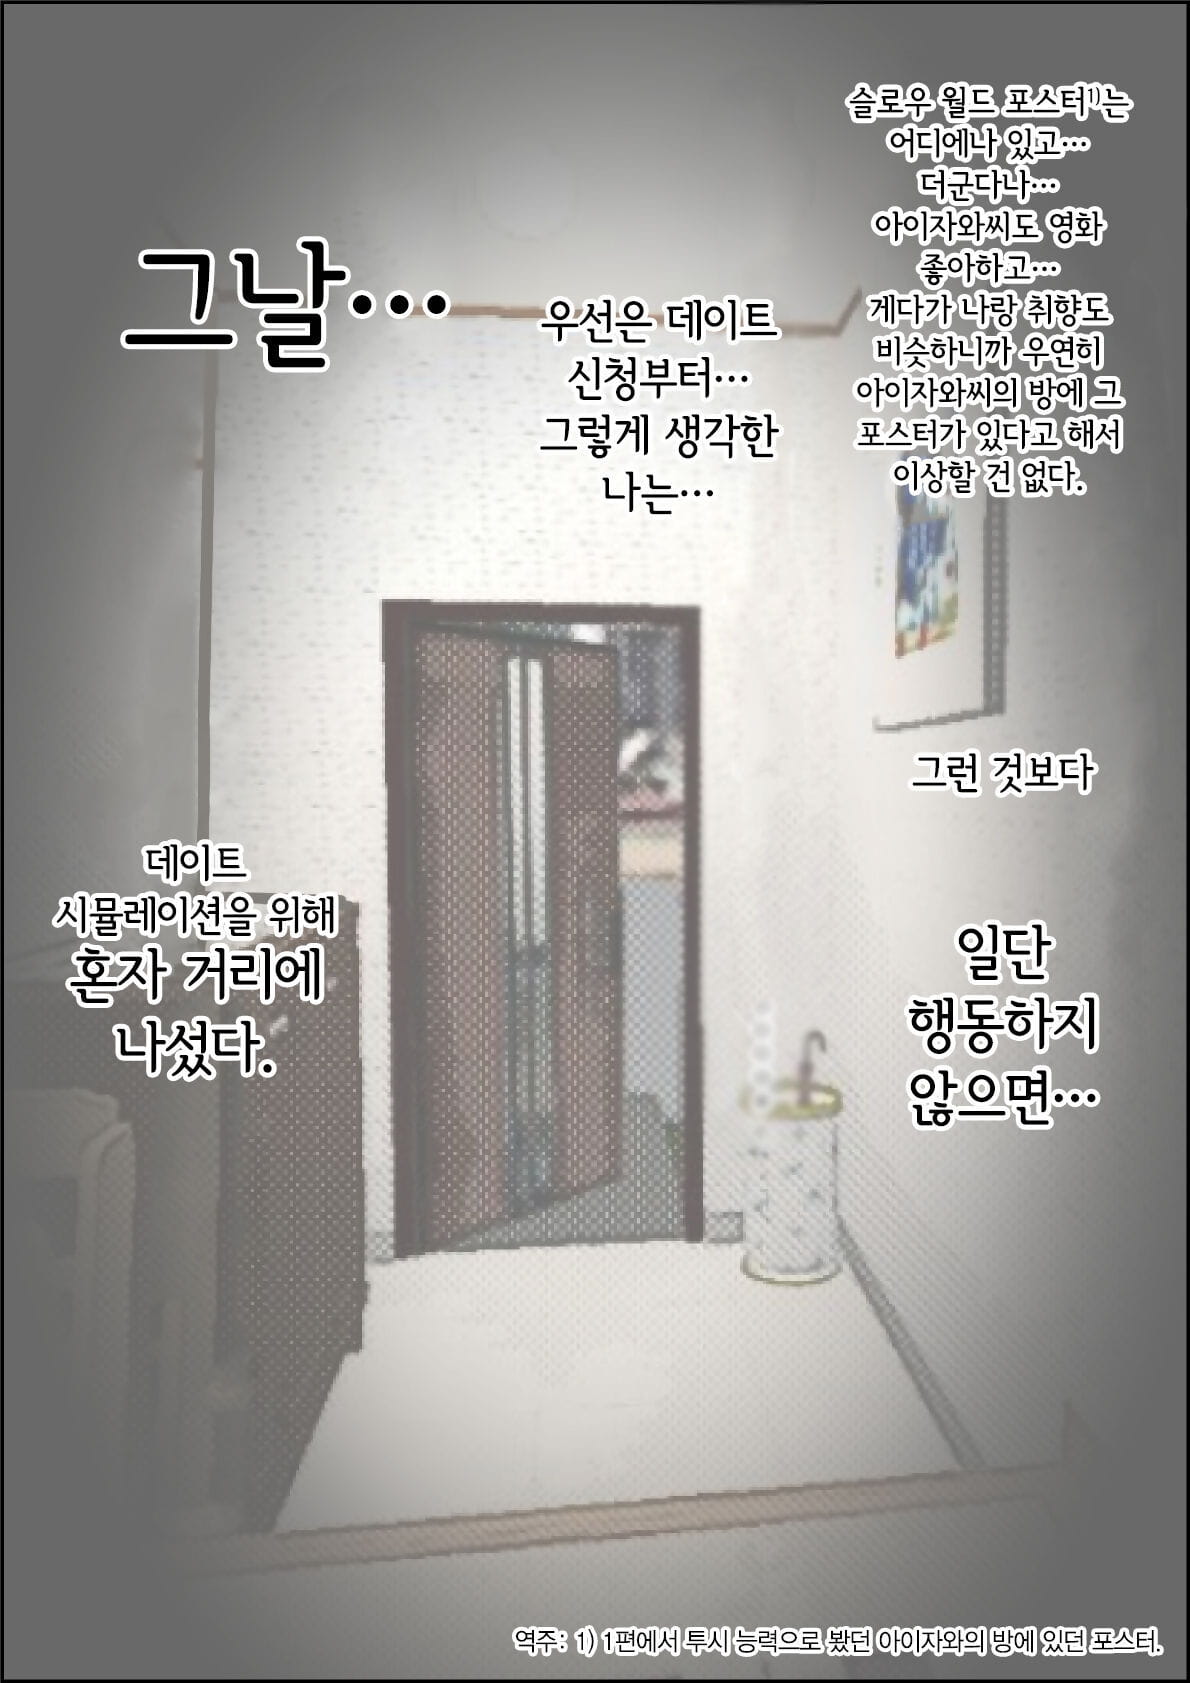 haruharudo charao ni netorare 로 1 vol.2 한국어